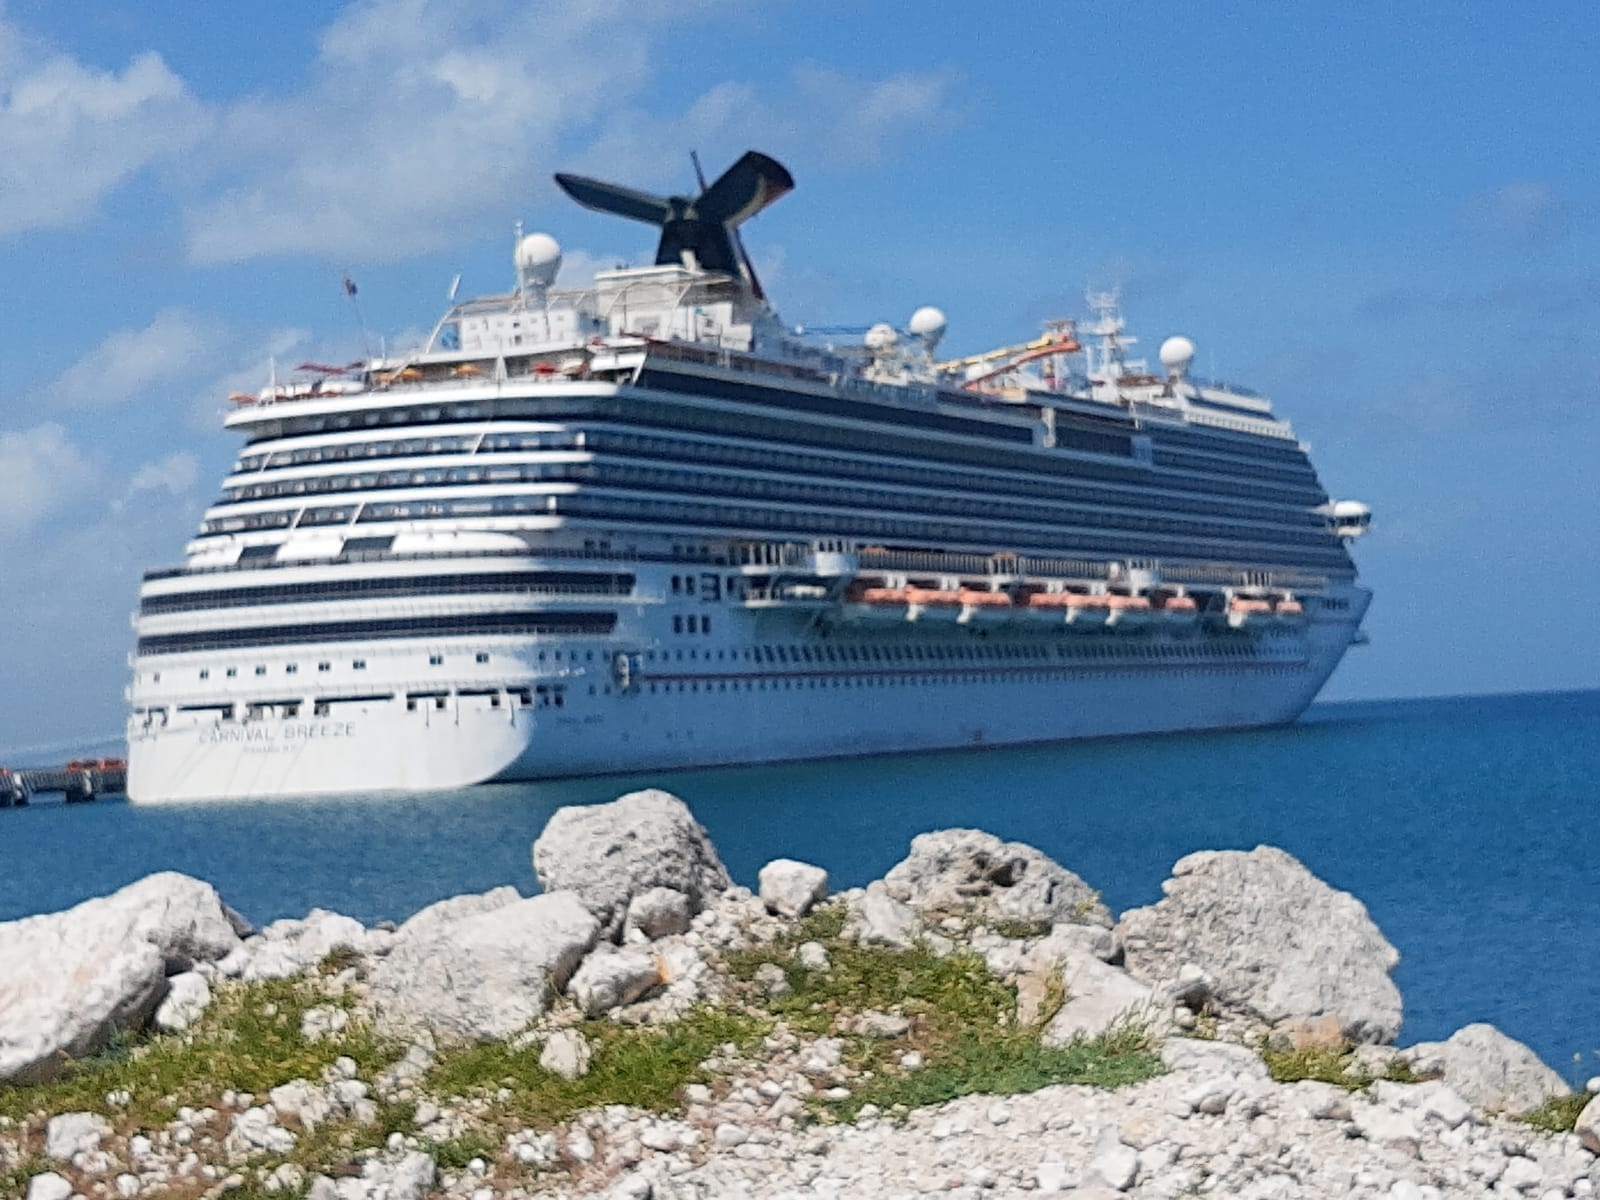 Crucero Carnival Breeze se despide de Progreso, Yucatán